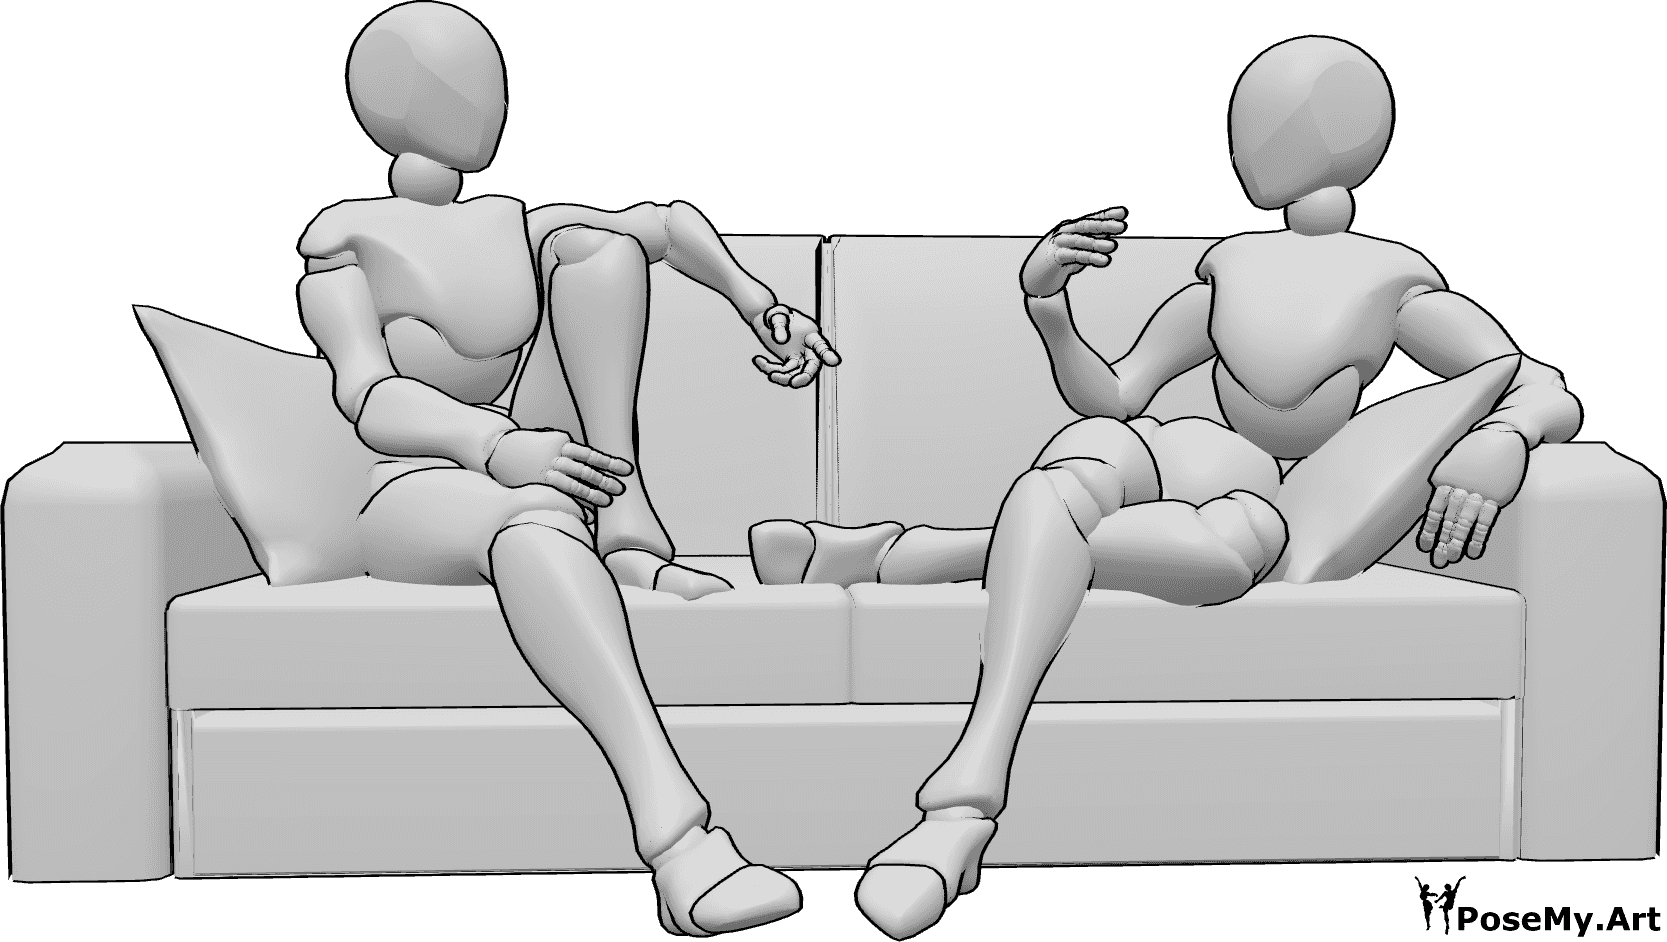 Referência de poses- Duas mulheres sentadas em pose - Duas mulheres estão sentadas confortavelmente no sofá a conversar